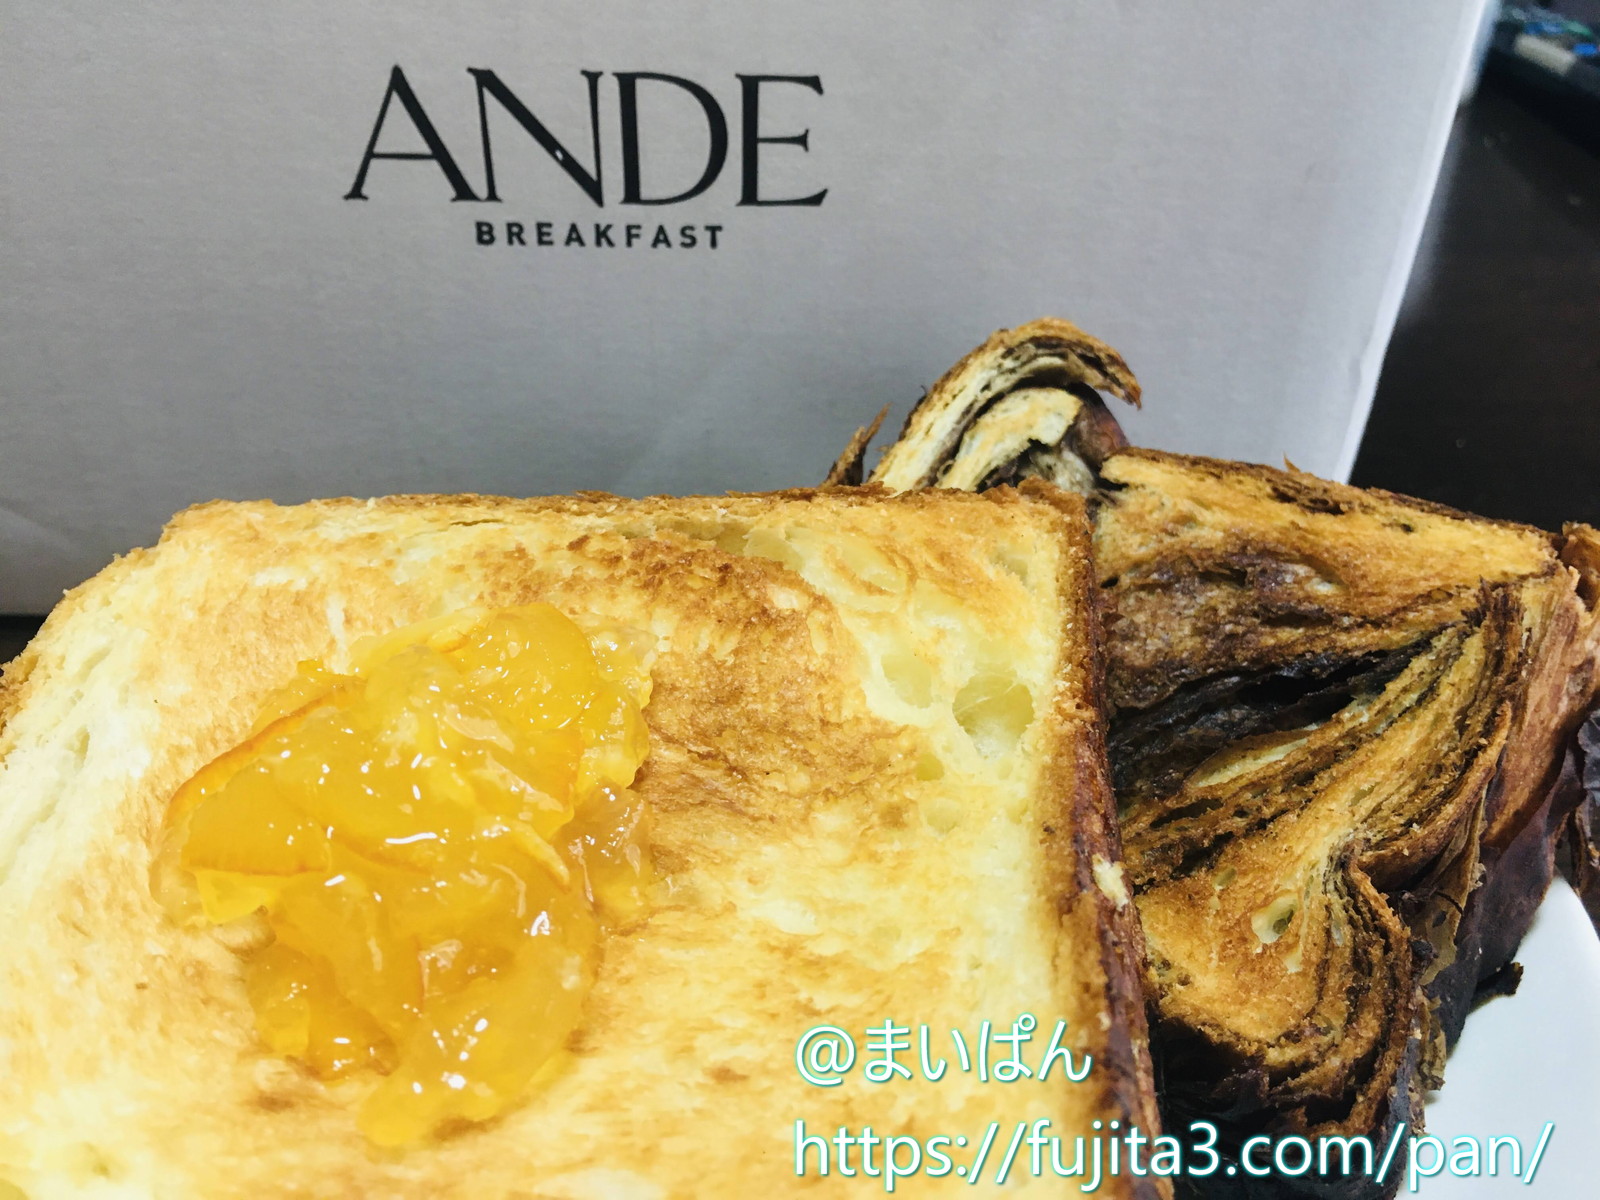 お取り寄せ Ande アンデ のデニッシュ食パンの実食レビュー 口コミ 評価 パンシェルジュが味わってみた感想を紹介 まいぱん